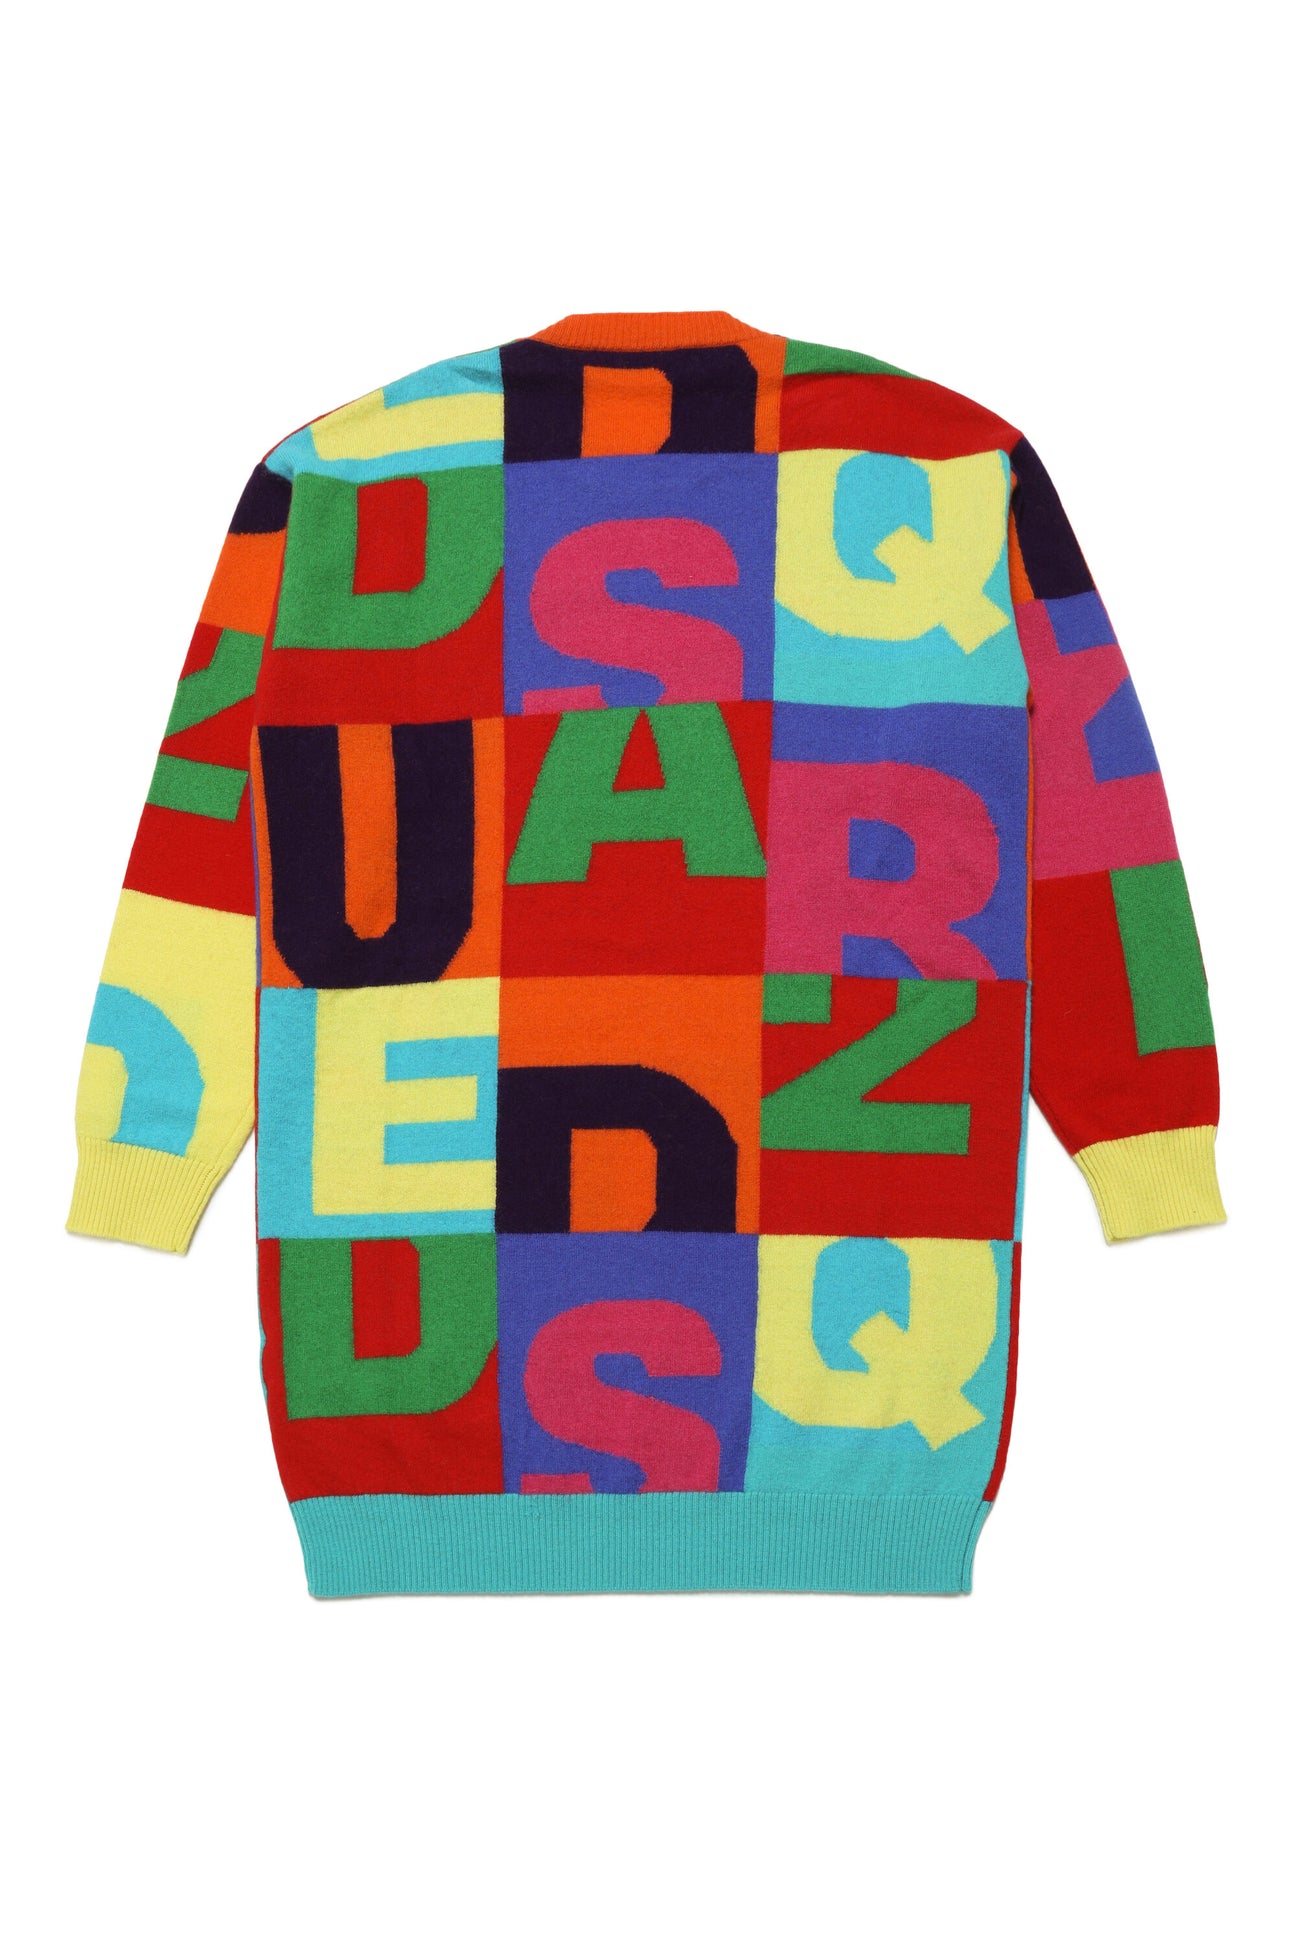 Abito maxi-maglione in lana colorblock con lettering Abito maxi-maglione in lana colorblock con lettering